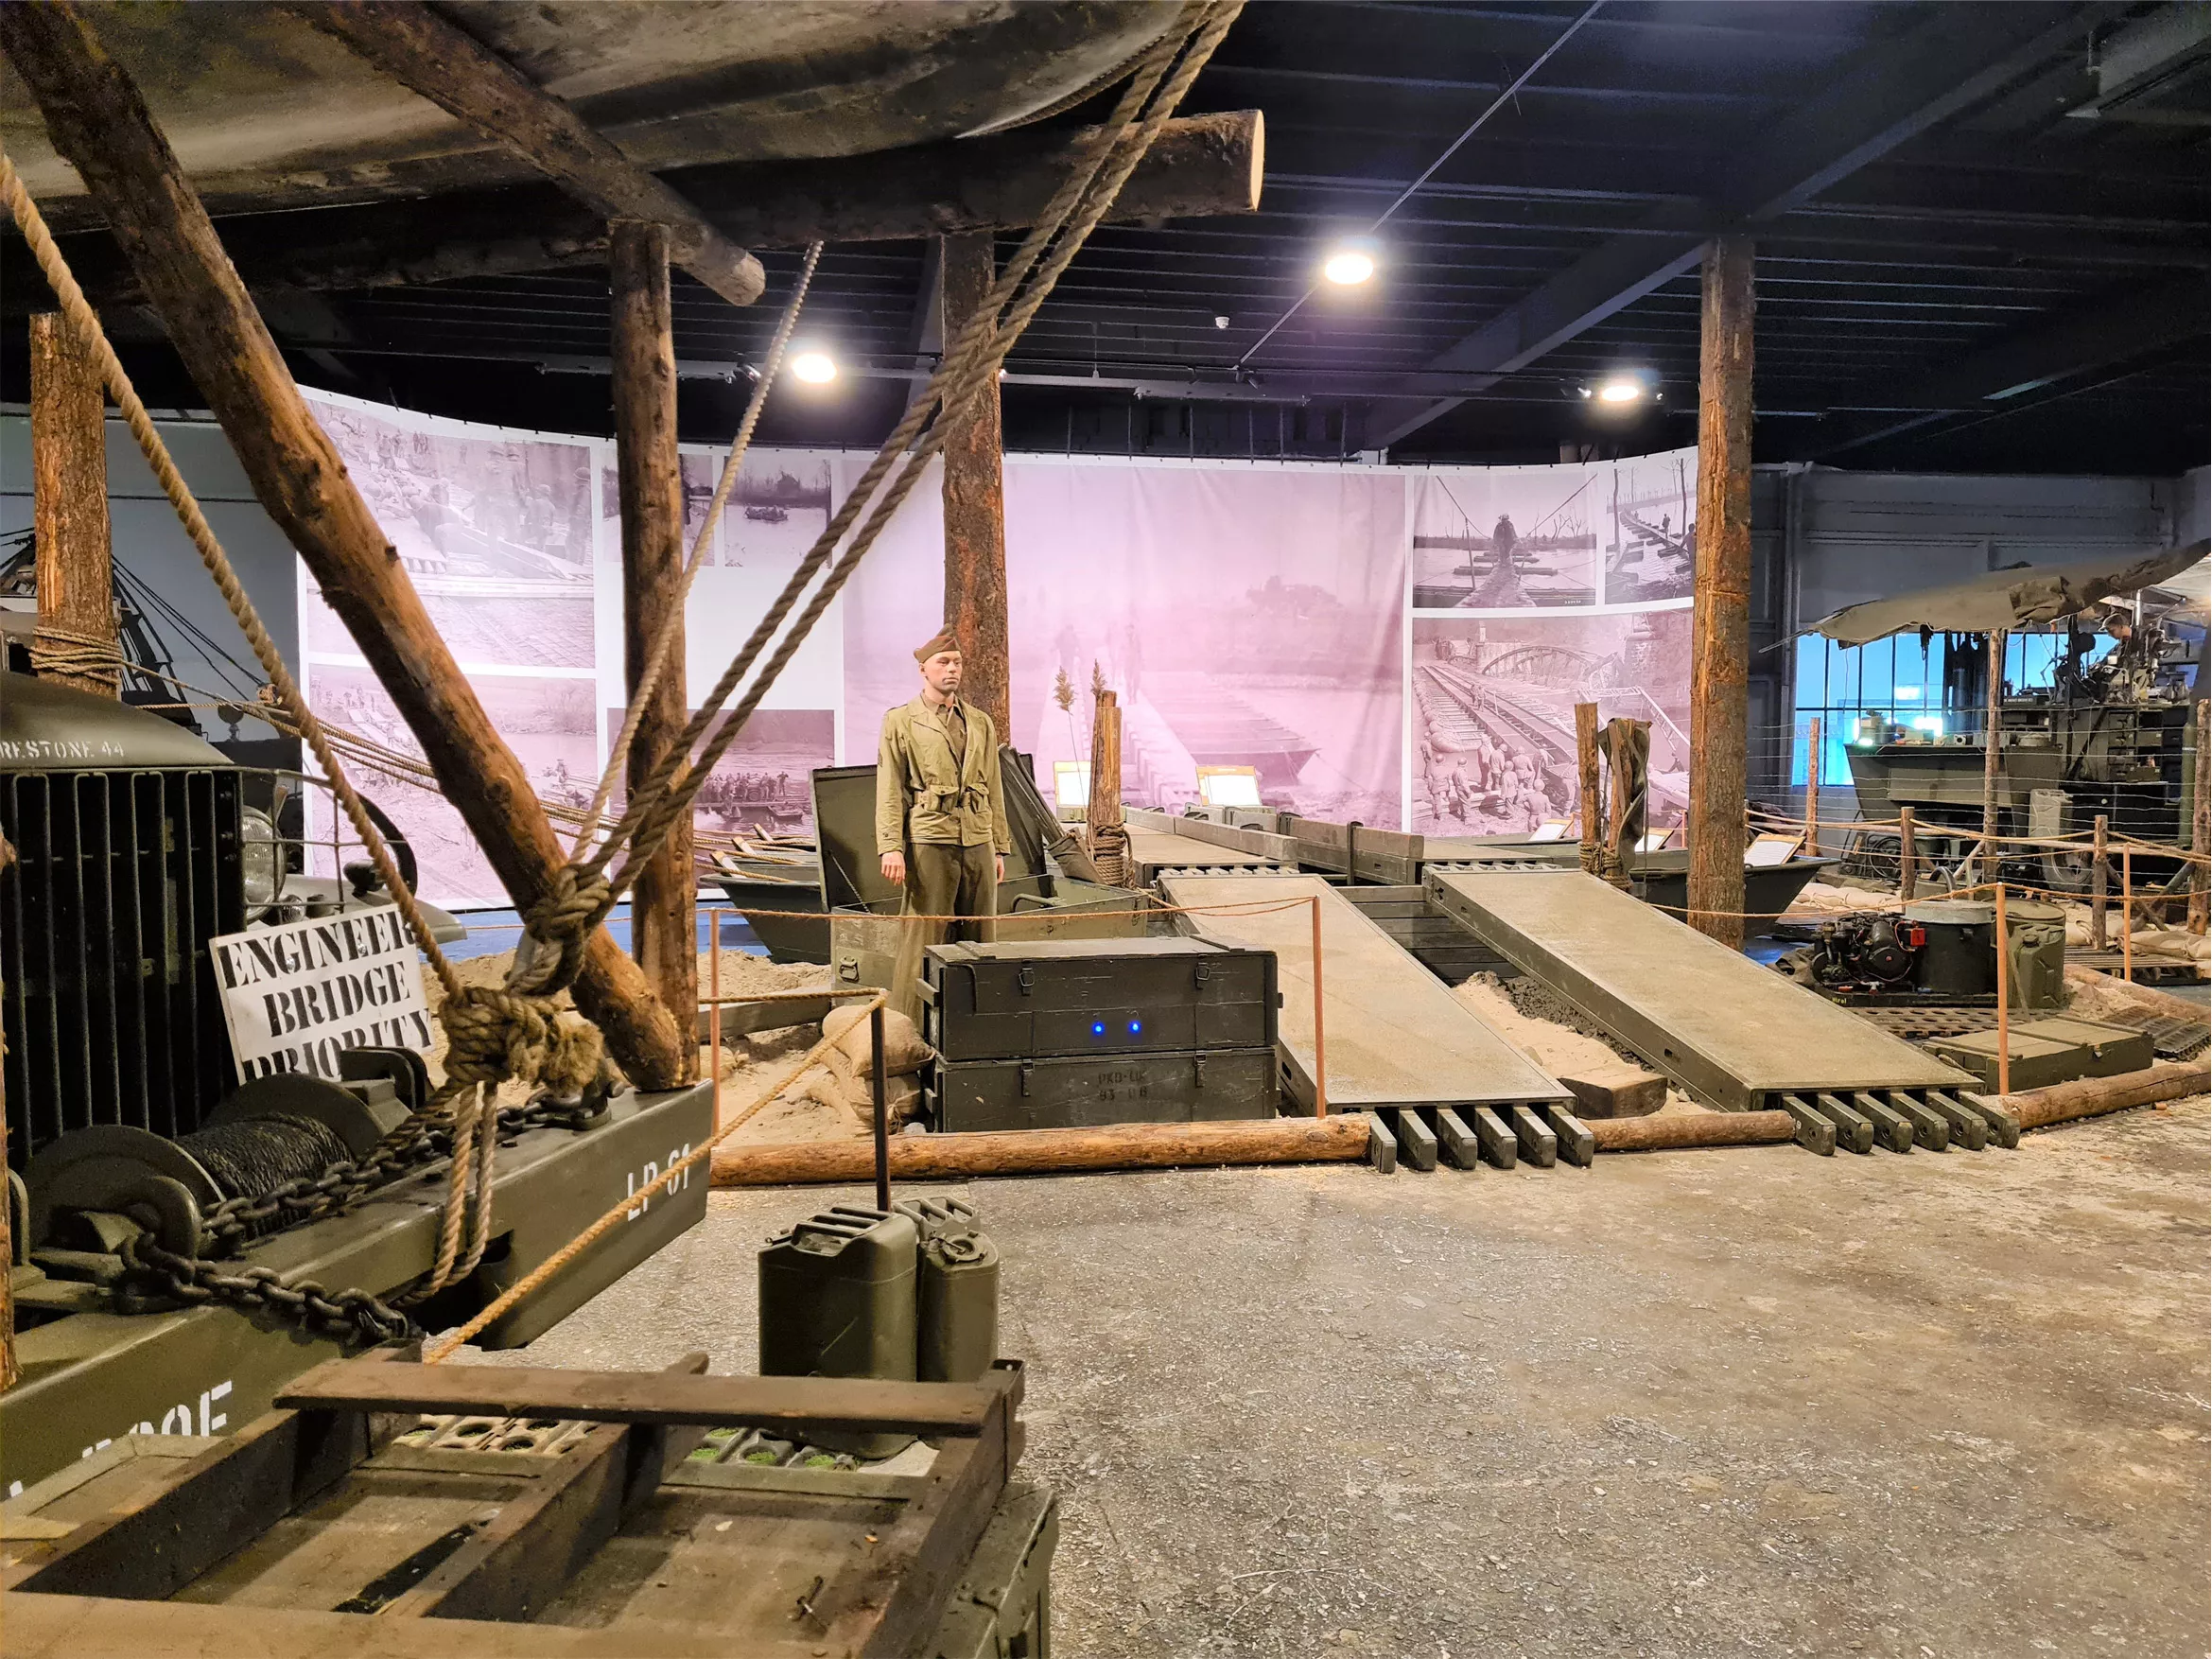 Militaire display met legervoertuigen, noodbruggen, poppen met uniform, tanks, kanonnen en wapens uit de Tweede Wereldoorlog